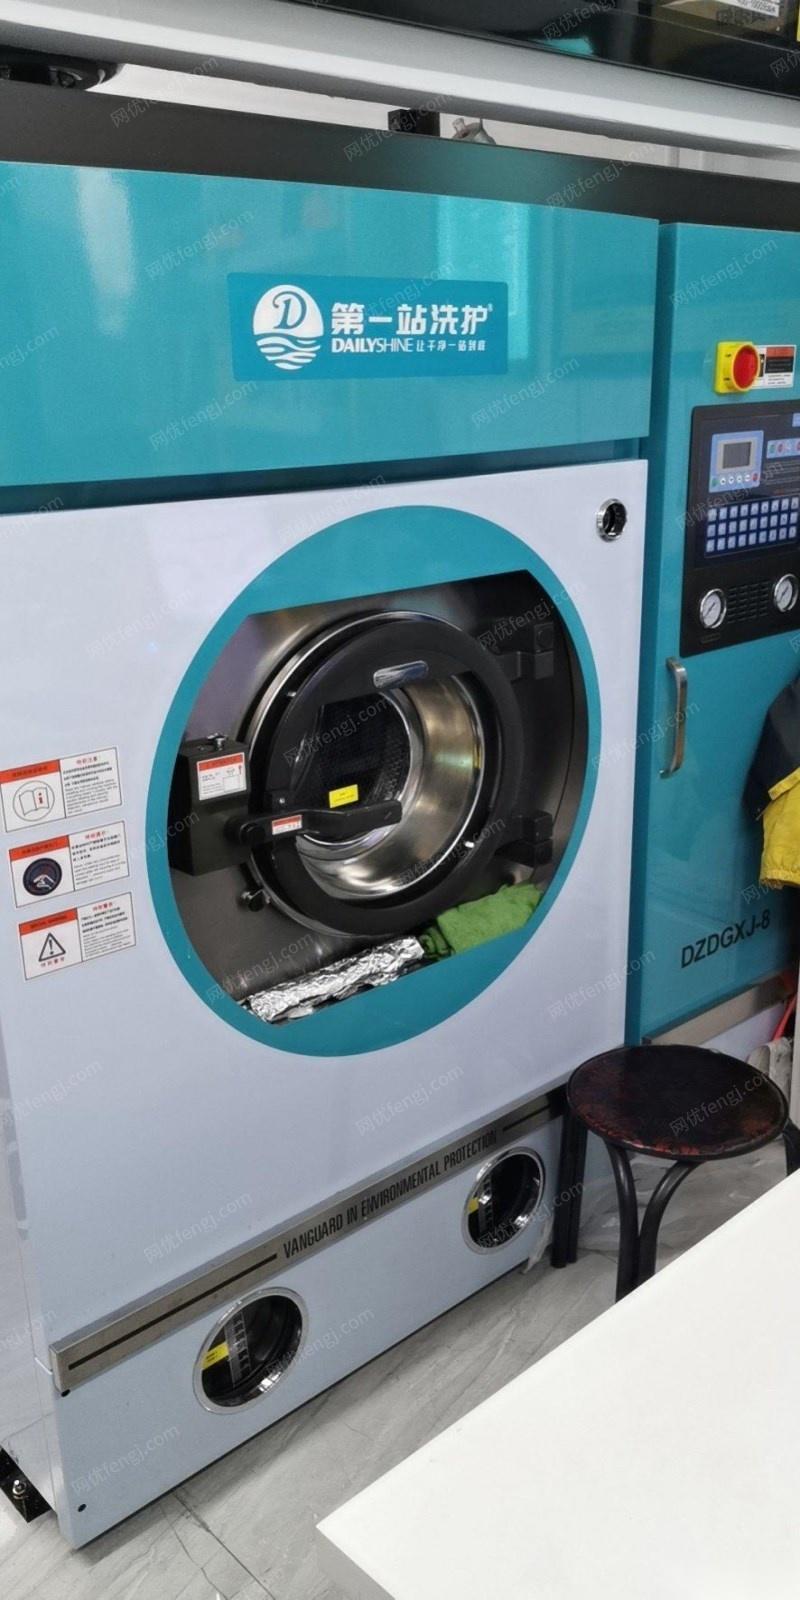 北京通州区出售一整套干洗机 水洗机 烘干机 熨烫机 70000元